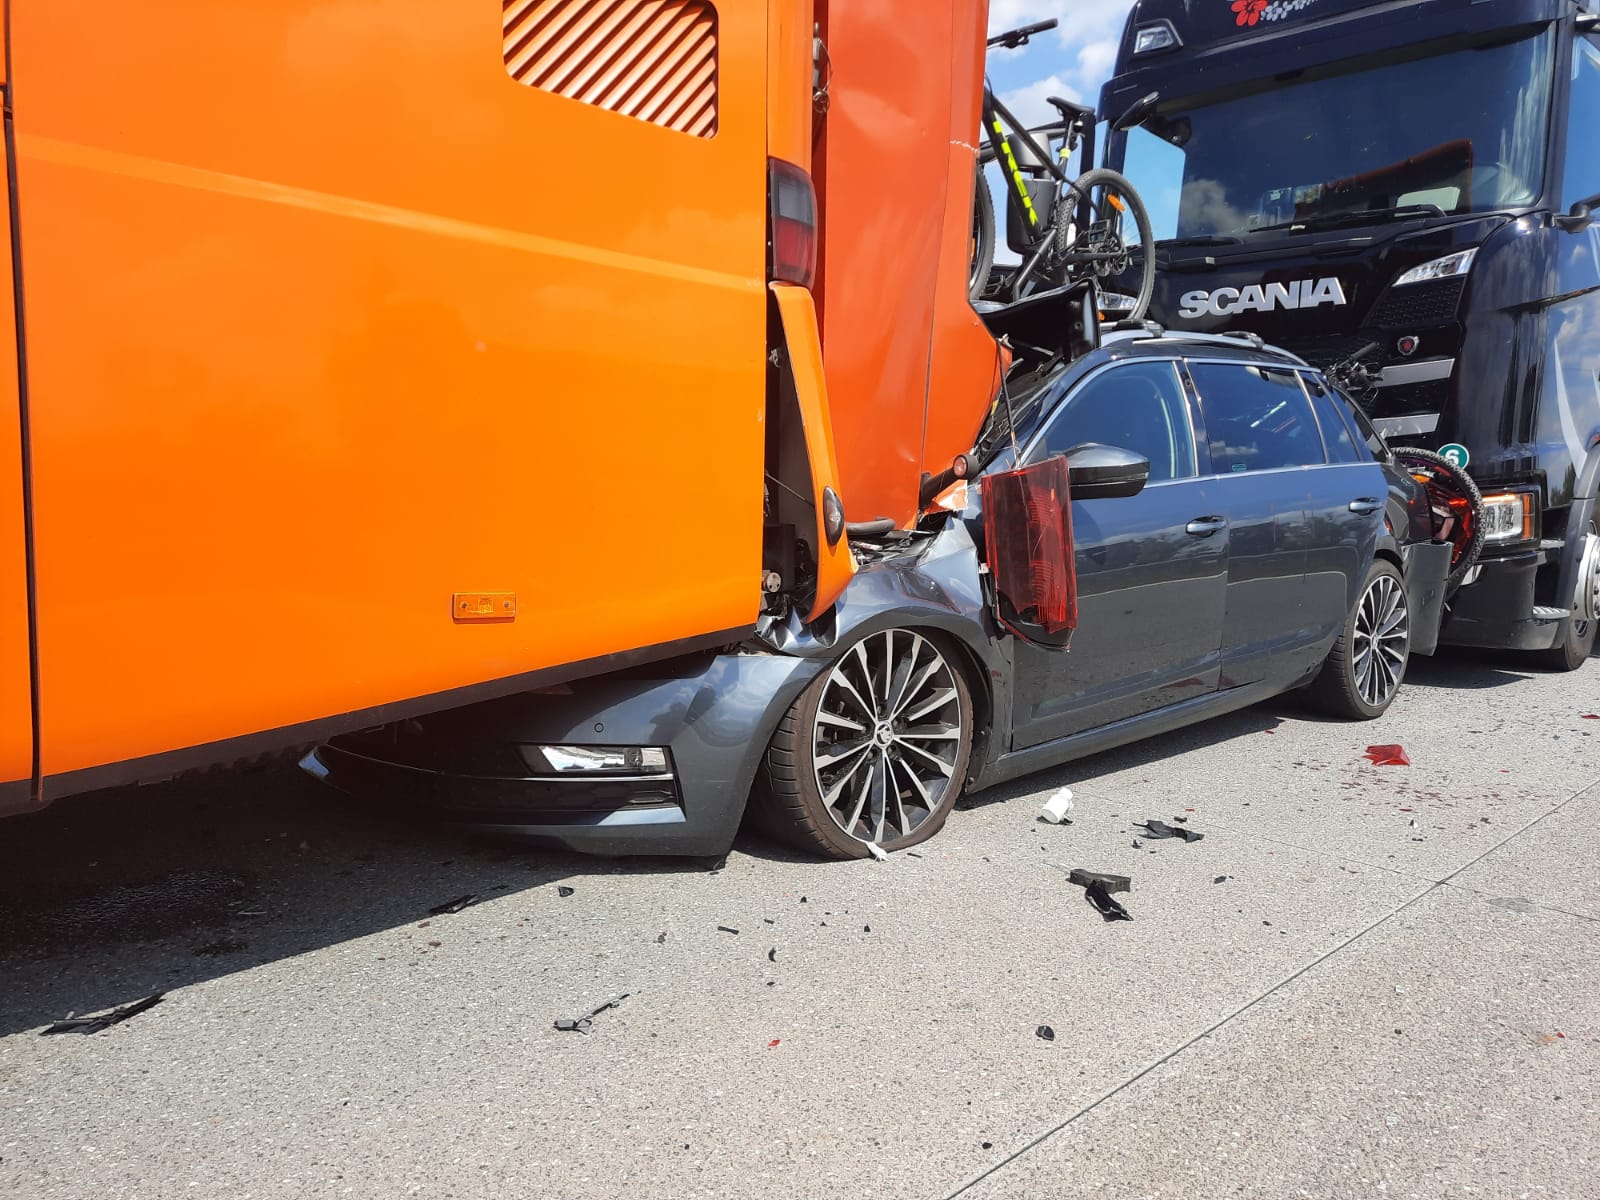 009-Tragická nehoda na brněnské dálnici u Ostředku na Benešovsku.jpg